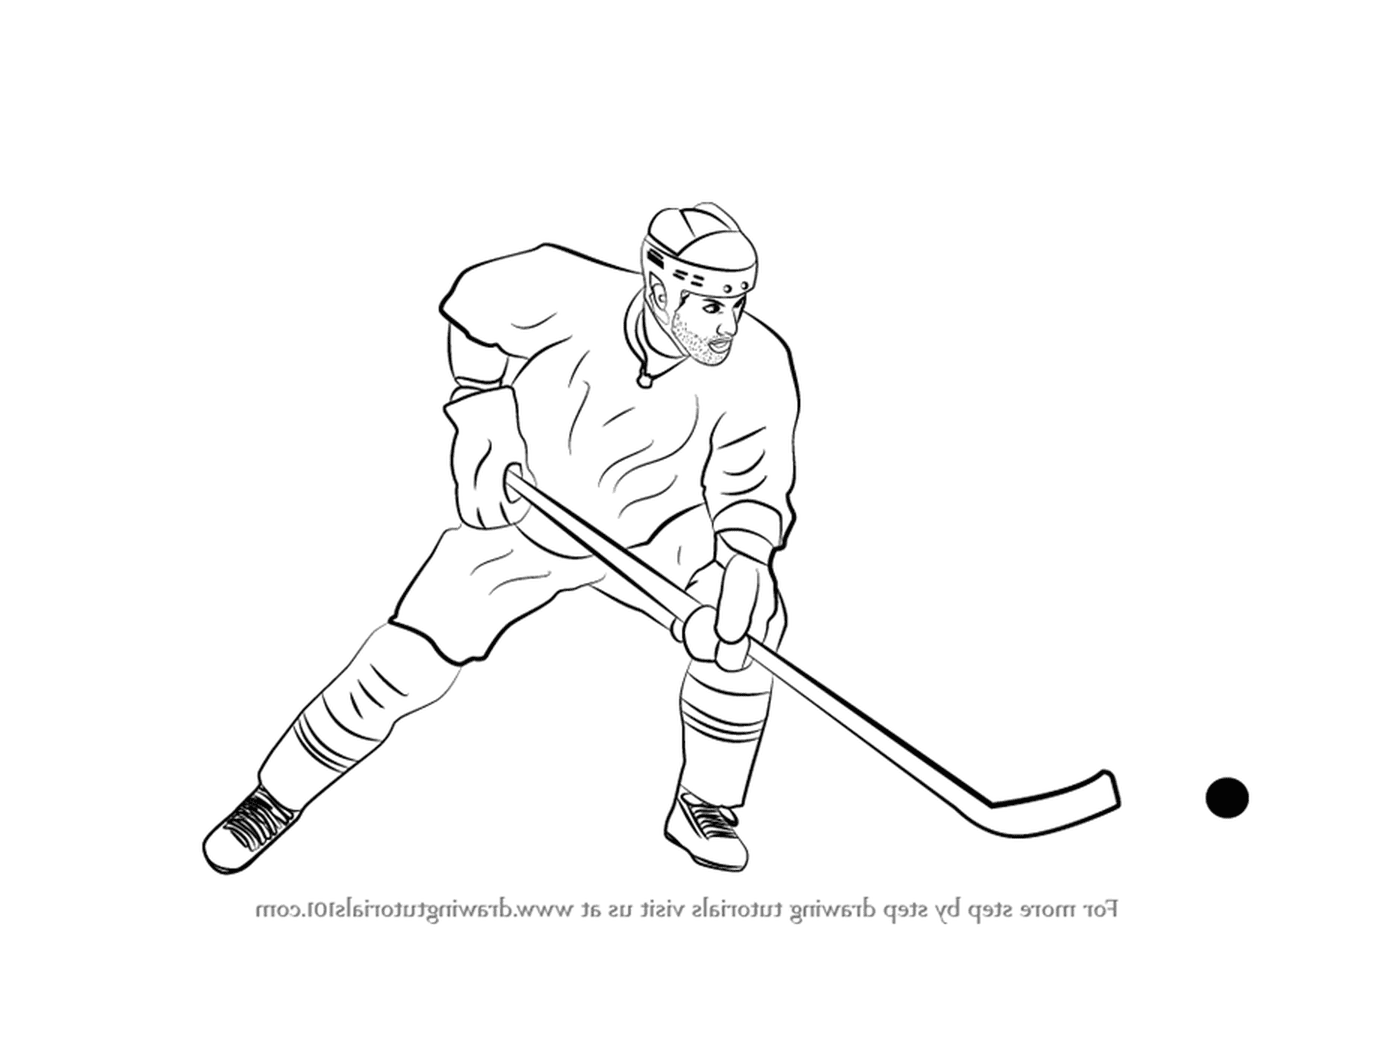  Disegnare un giocatore di hockey 